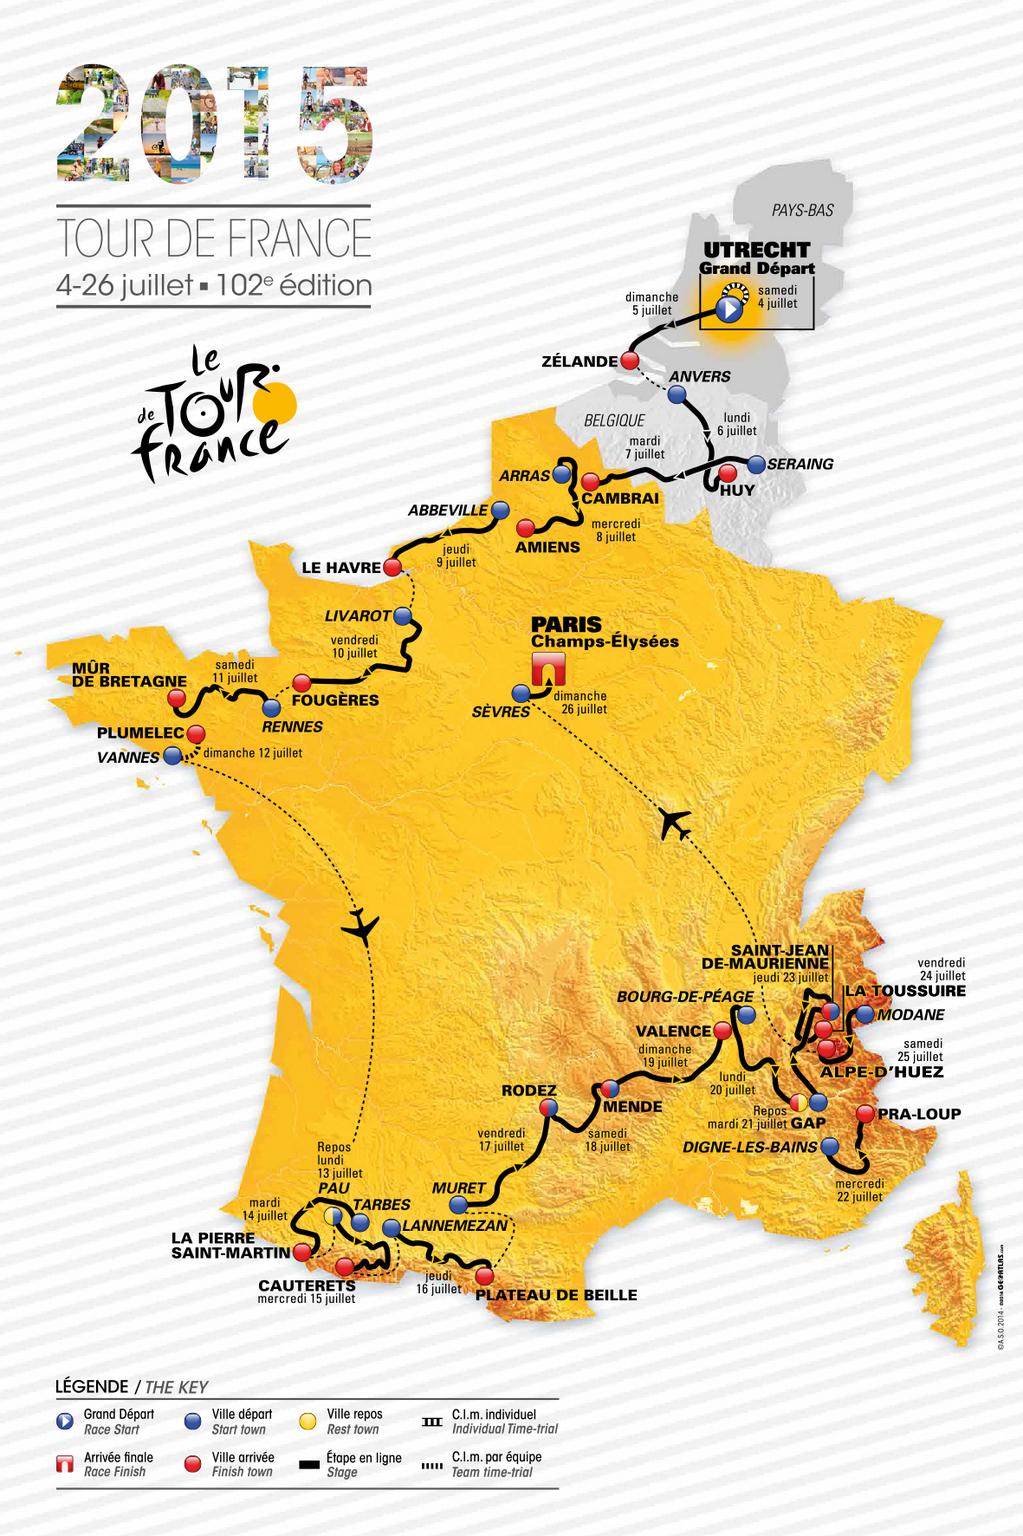 Le Tour de France 2015 ét. 18 : Victoire de Romain Bardet (Ag2r La Mondiale) devant Pierre Roland